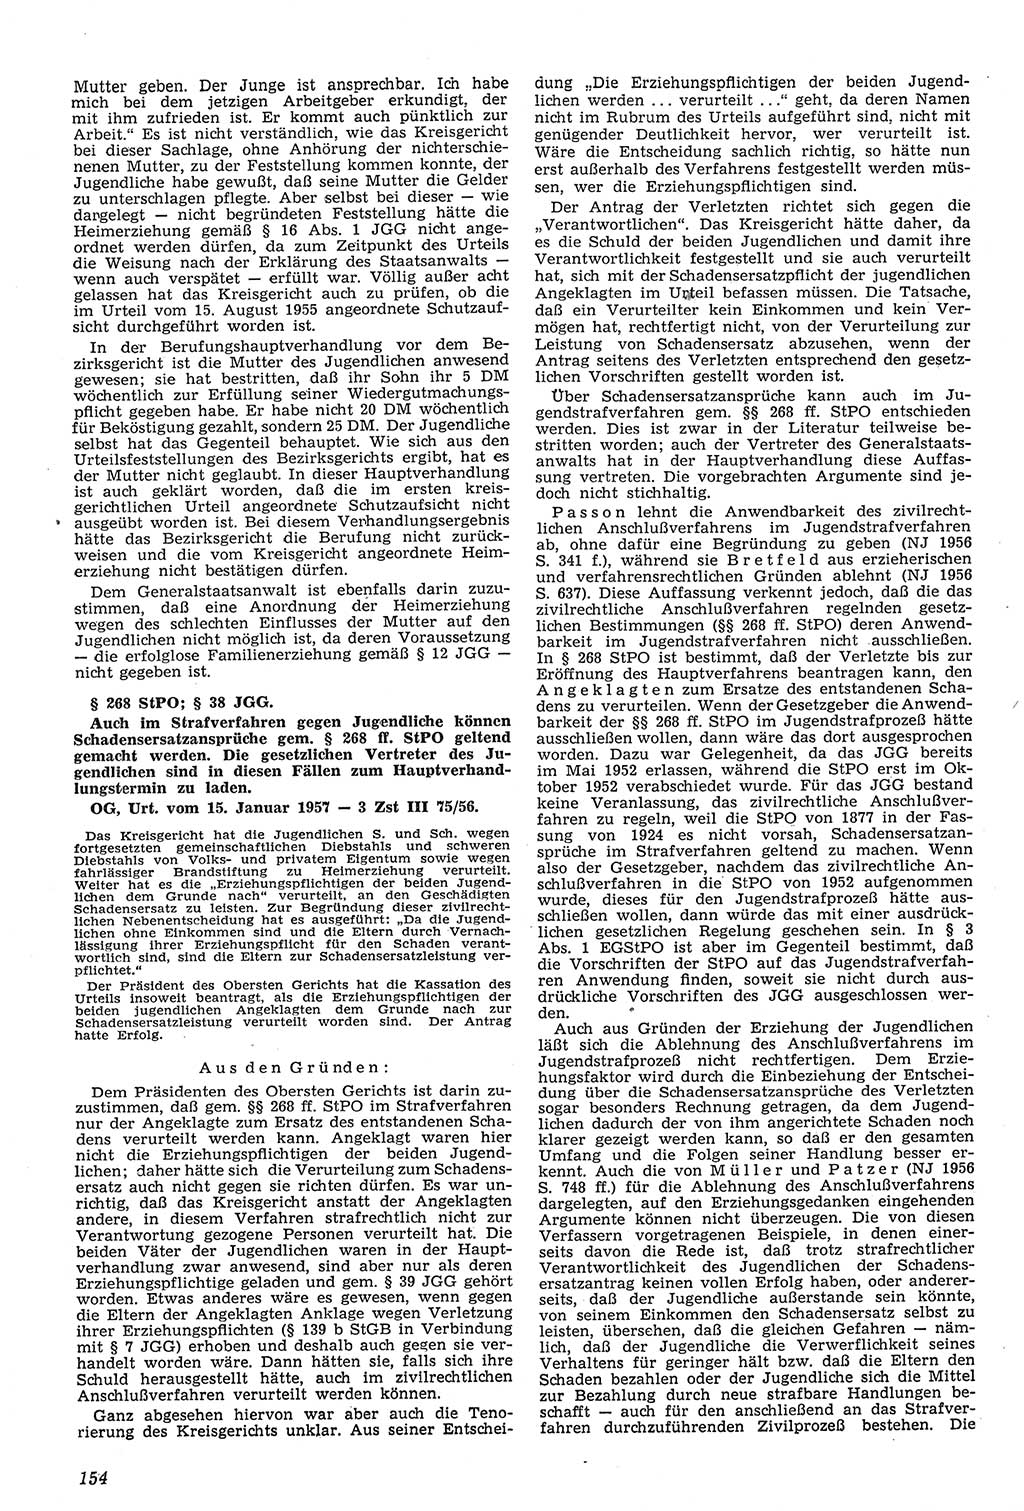 Neue Justiz (NJ), Zeitschrift für Recht und Rechtswissenschaft [Deutsche Demokratische Republik (DDR)], 11. Jahrgang 1957, Seite 154 (NJ DDR 1957, S. 154)